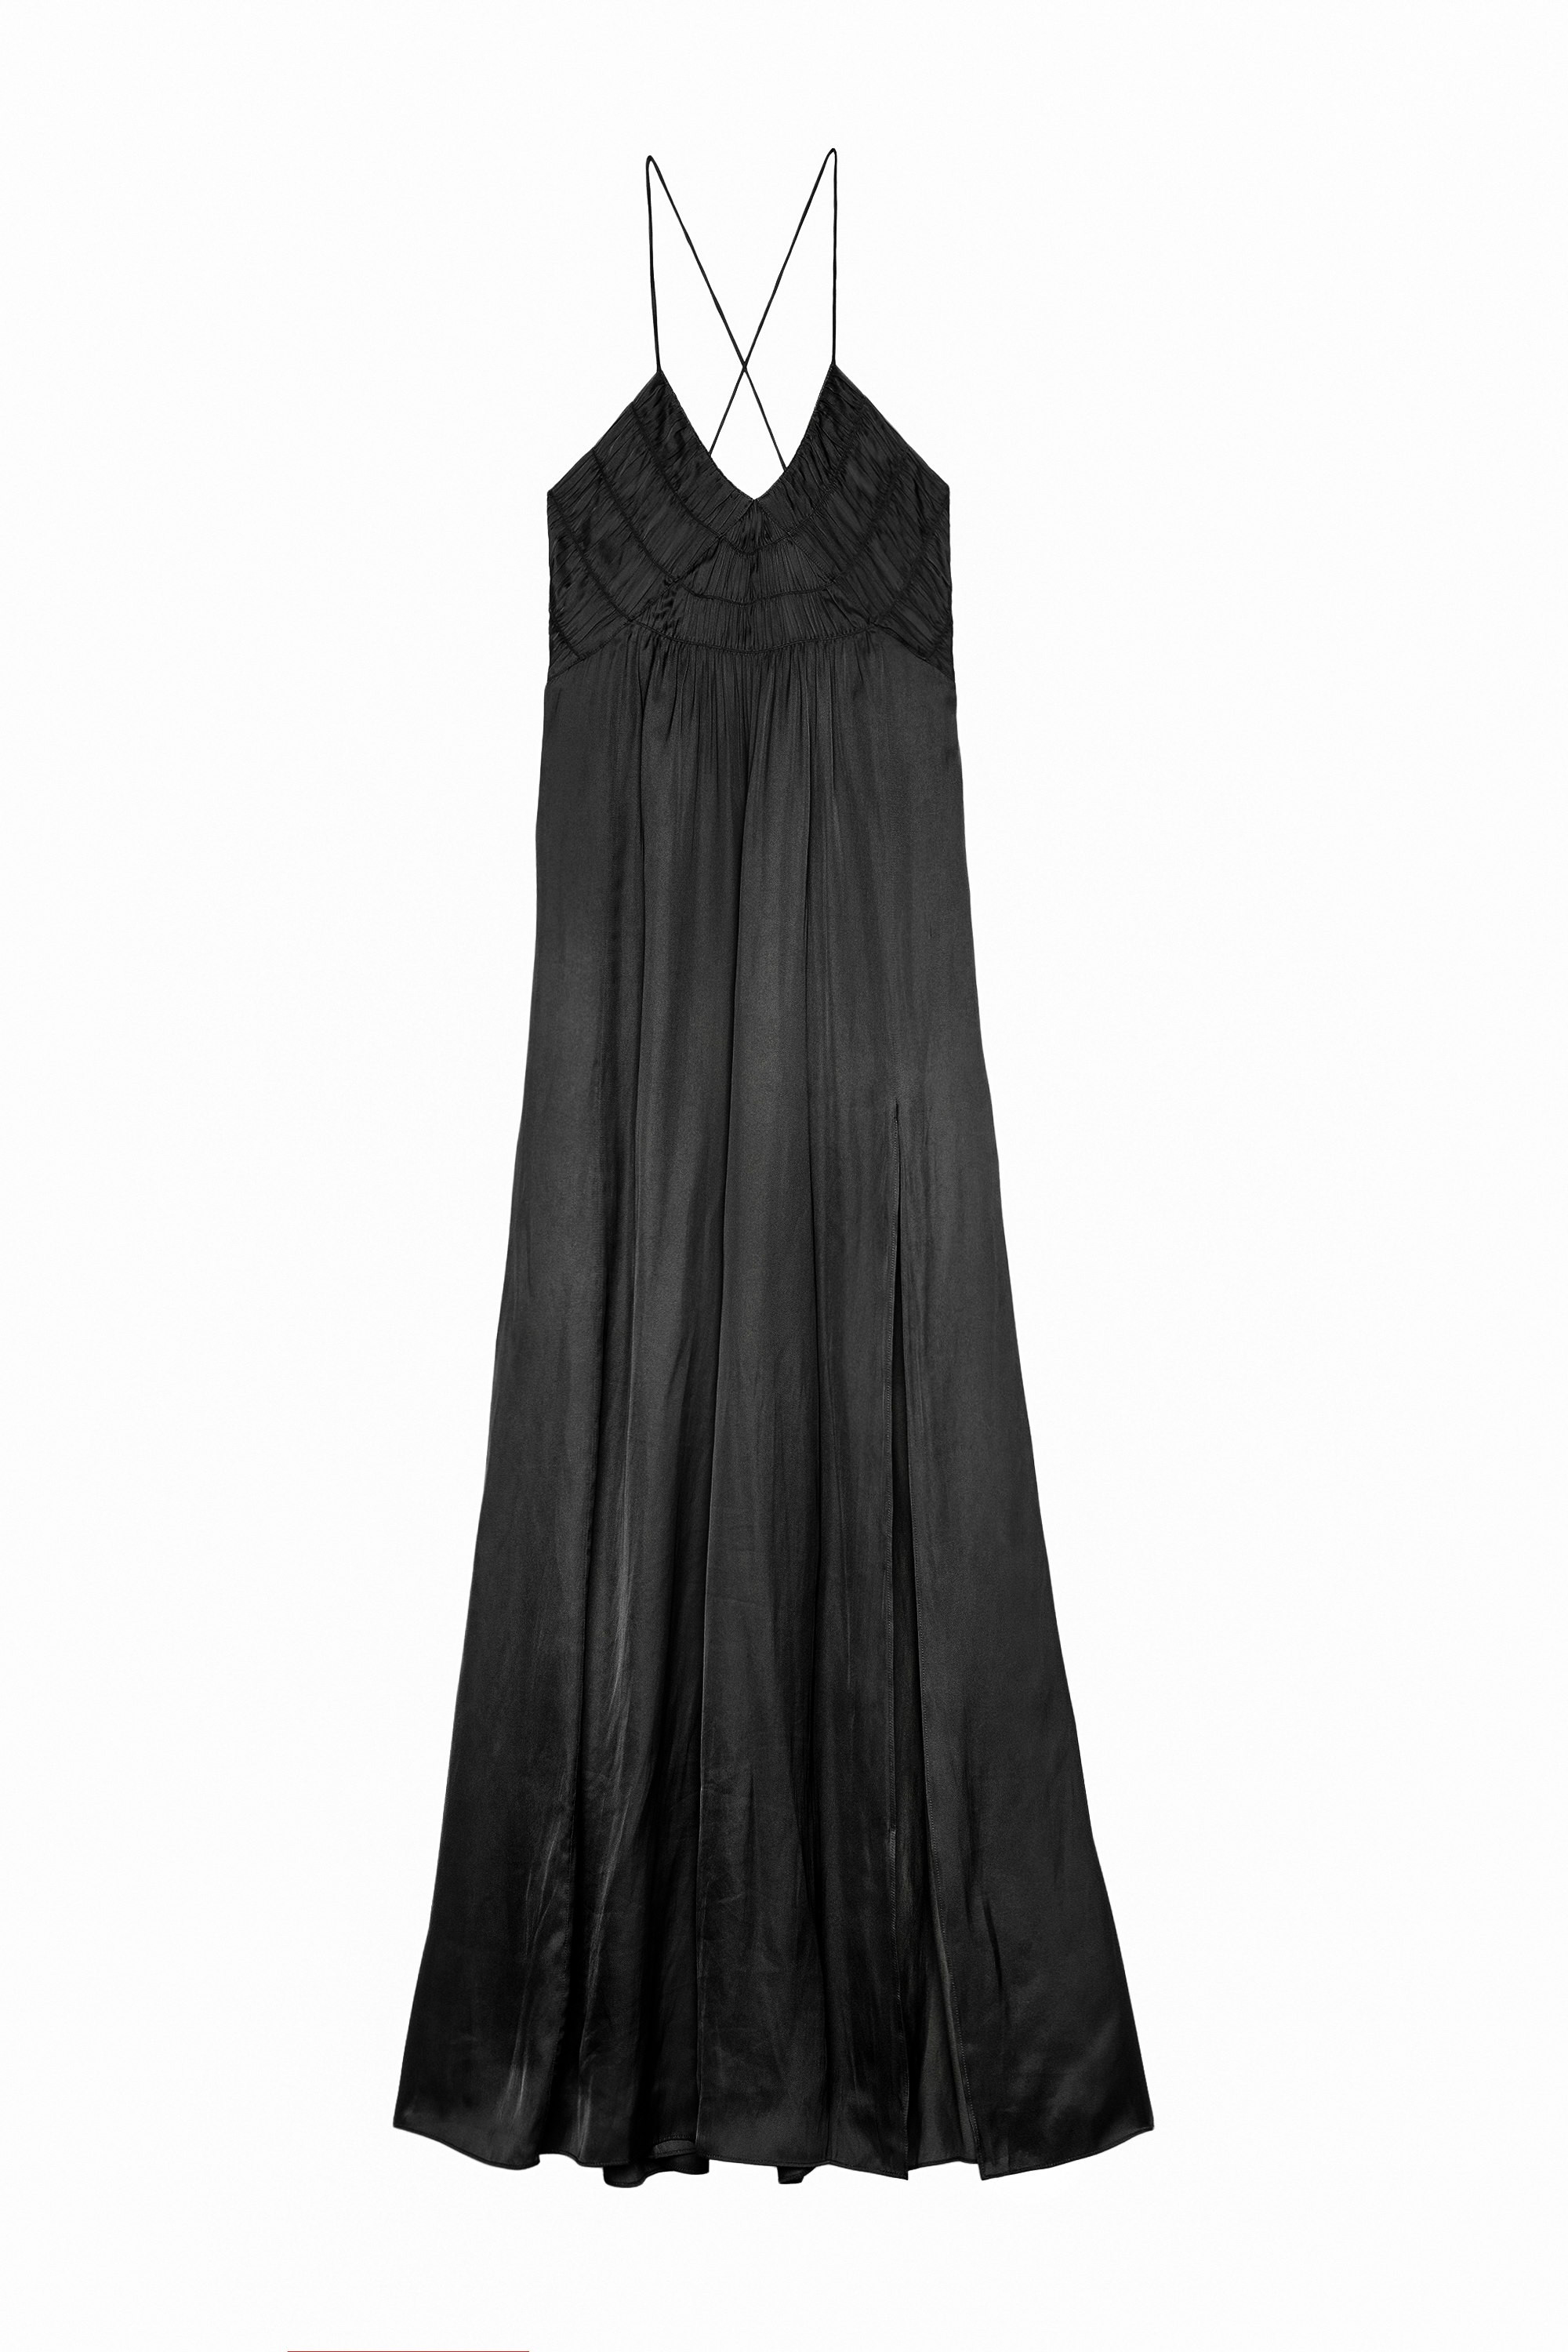 Kleid Rayonne Satin Schwarzes, langes Damenkleid